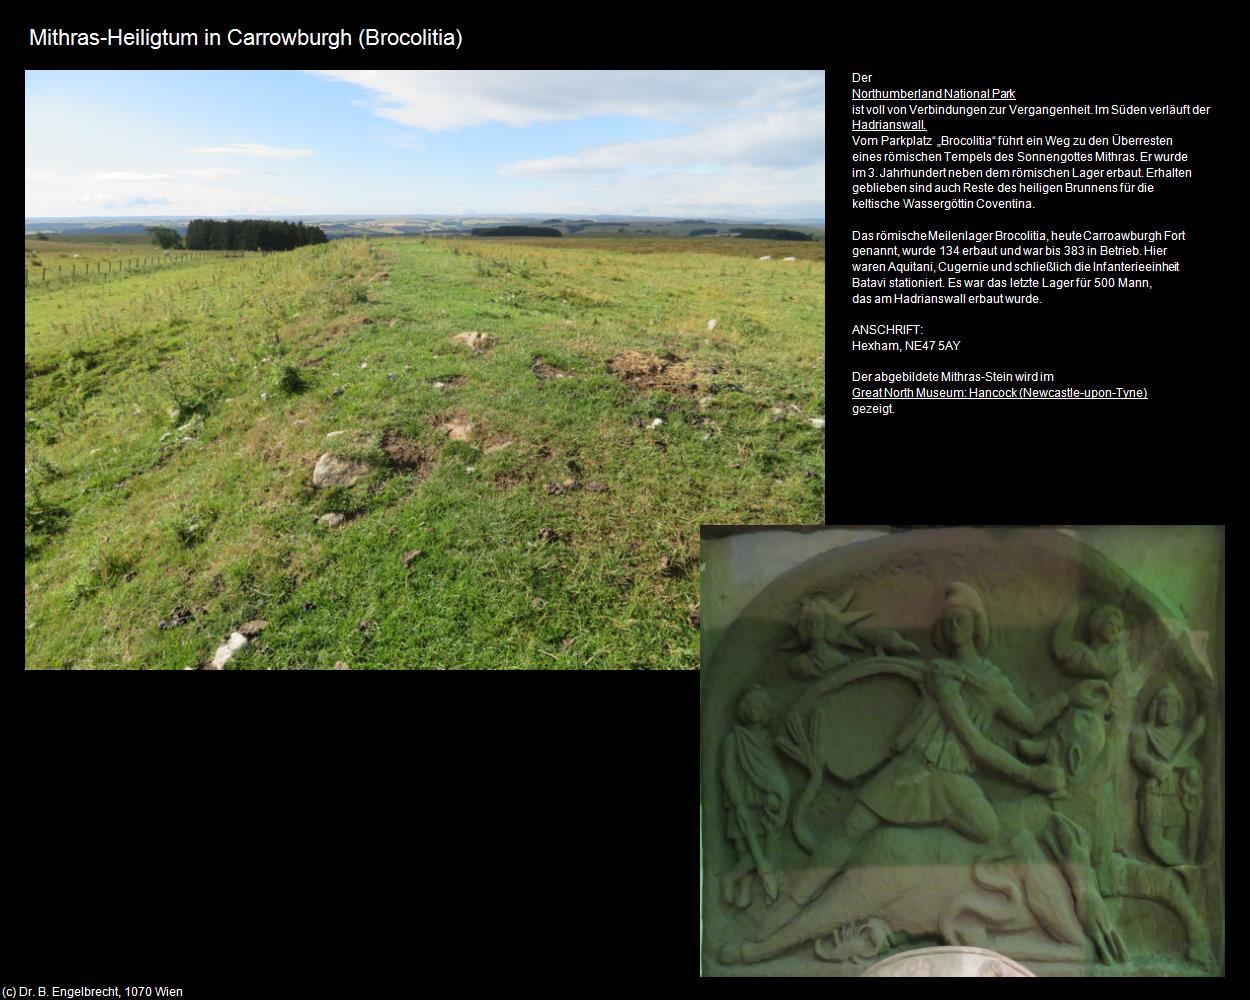 Mithras-Heiligtum (Carrowburgh) (Newbrough, England) in Kulturatlas-ENGLAND und WALES(c)B.Engelbrecht